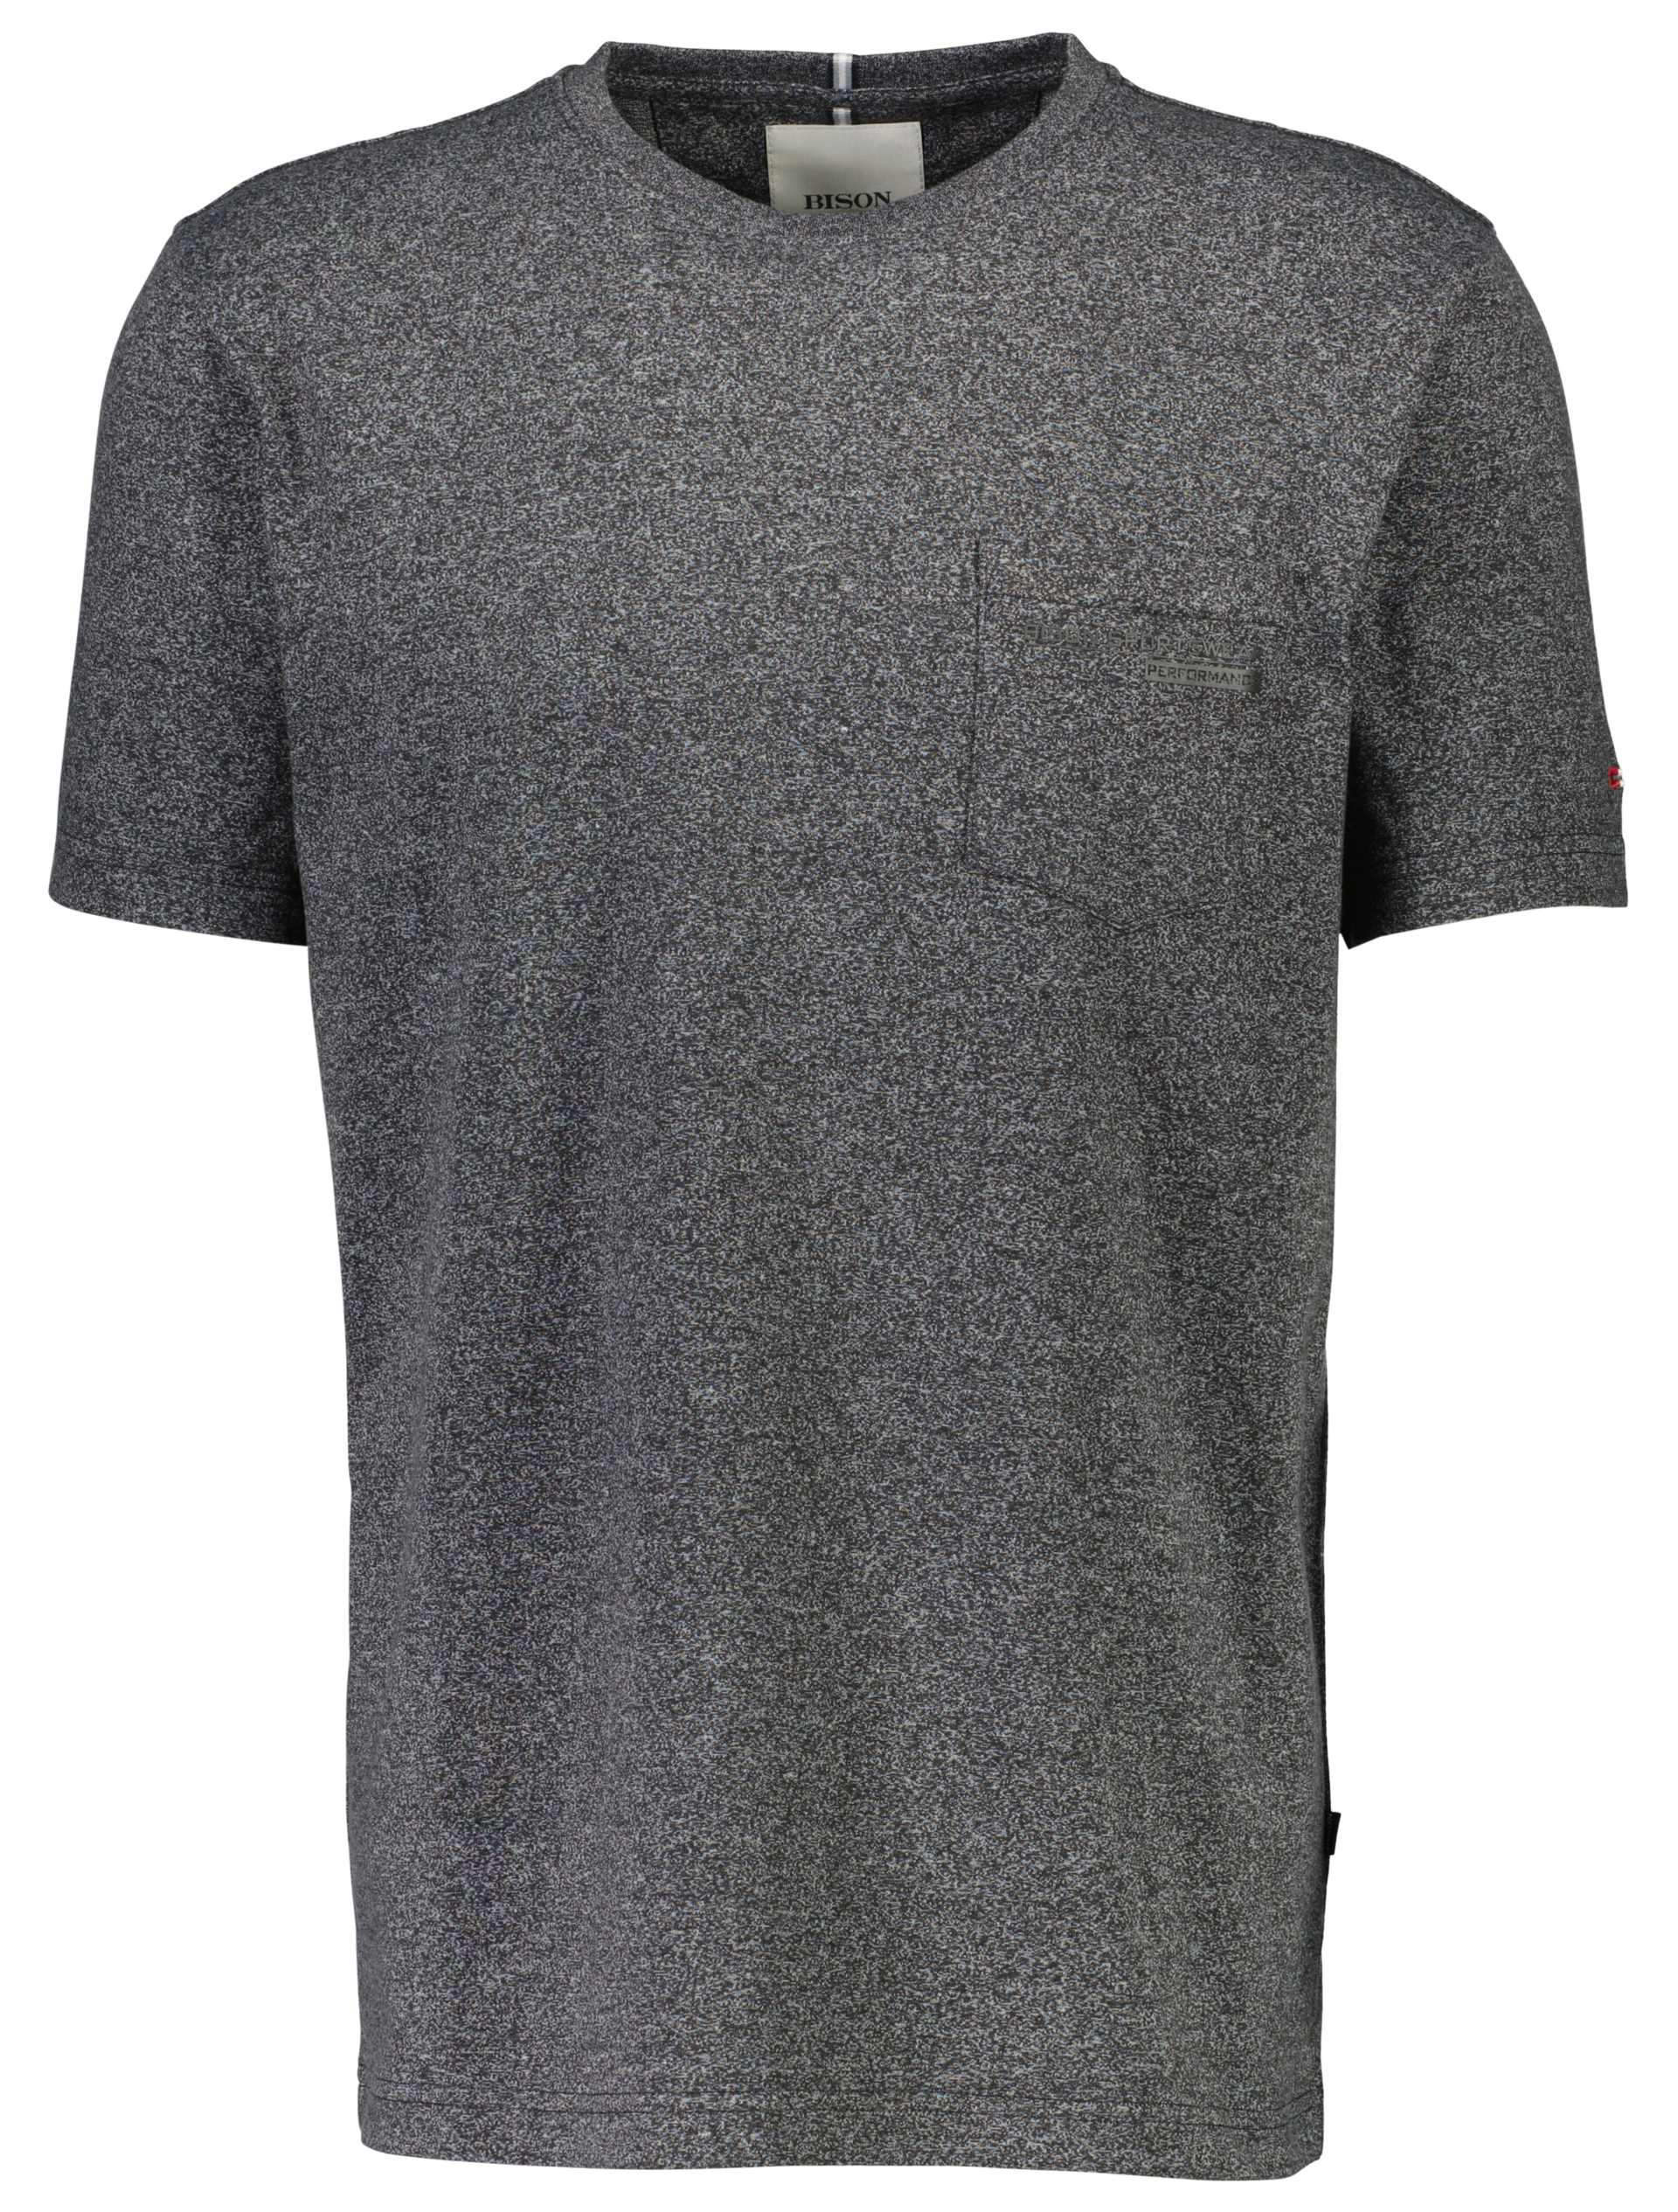 Bison T-shirt grå / charcoal